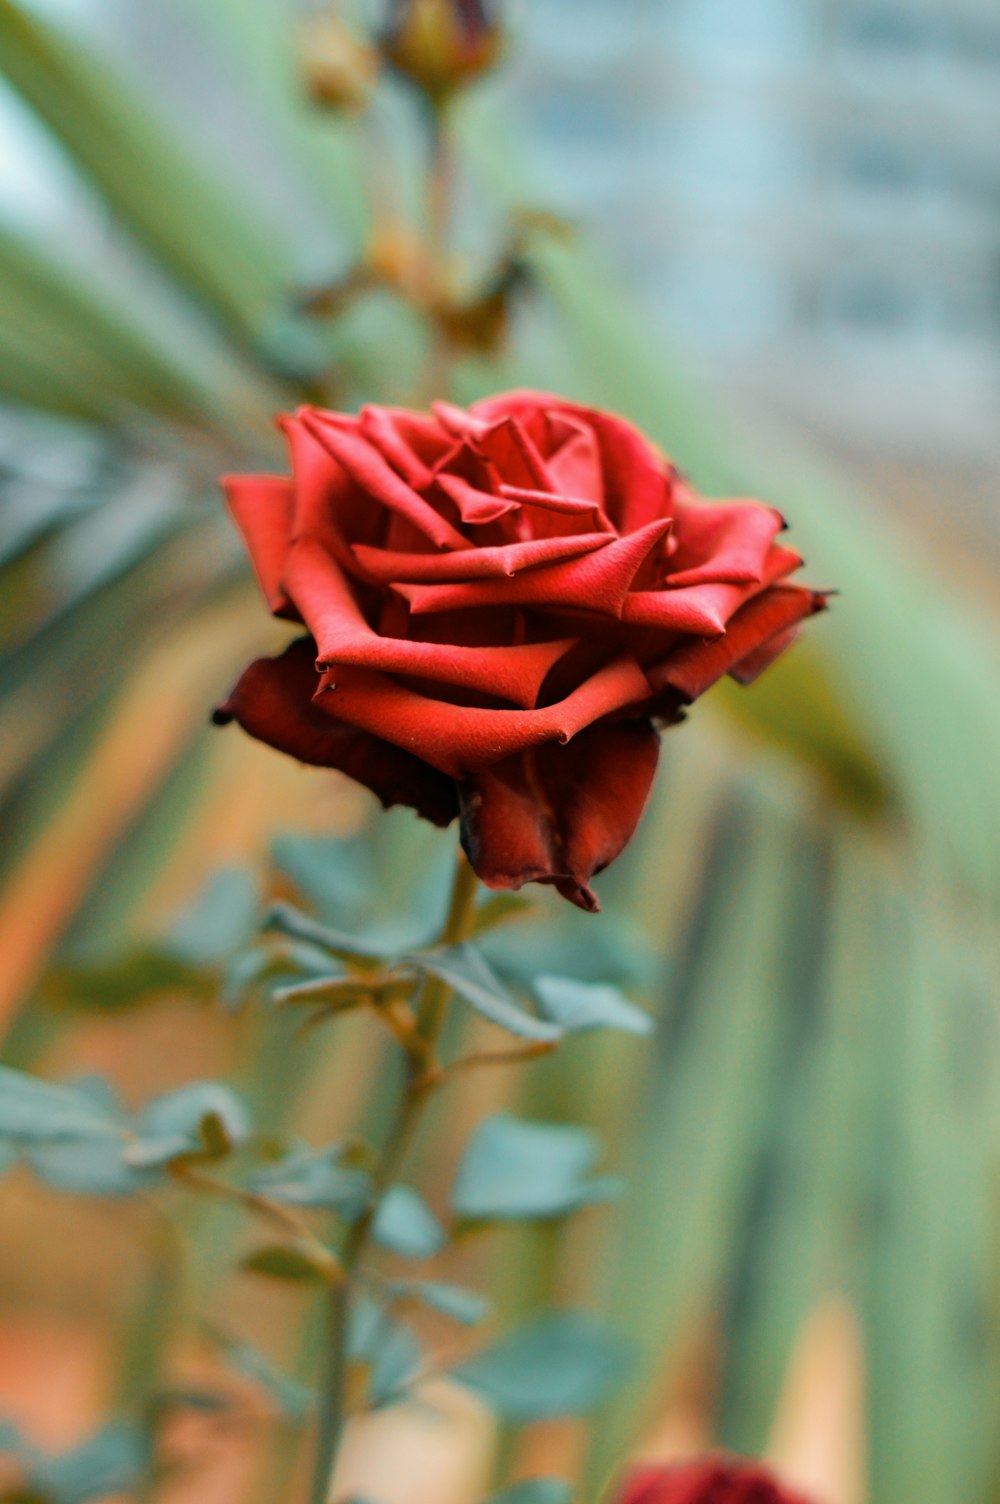 rose rouge en fleurs pendant la journée